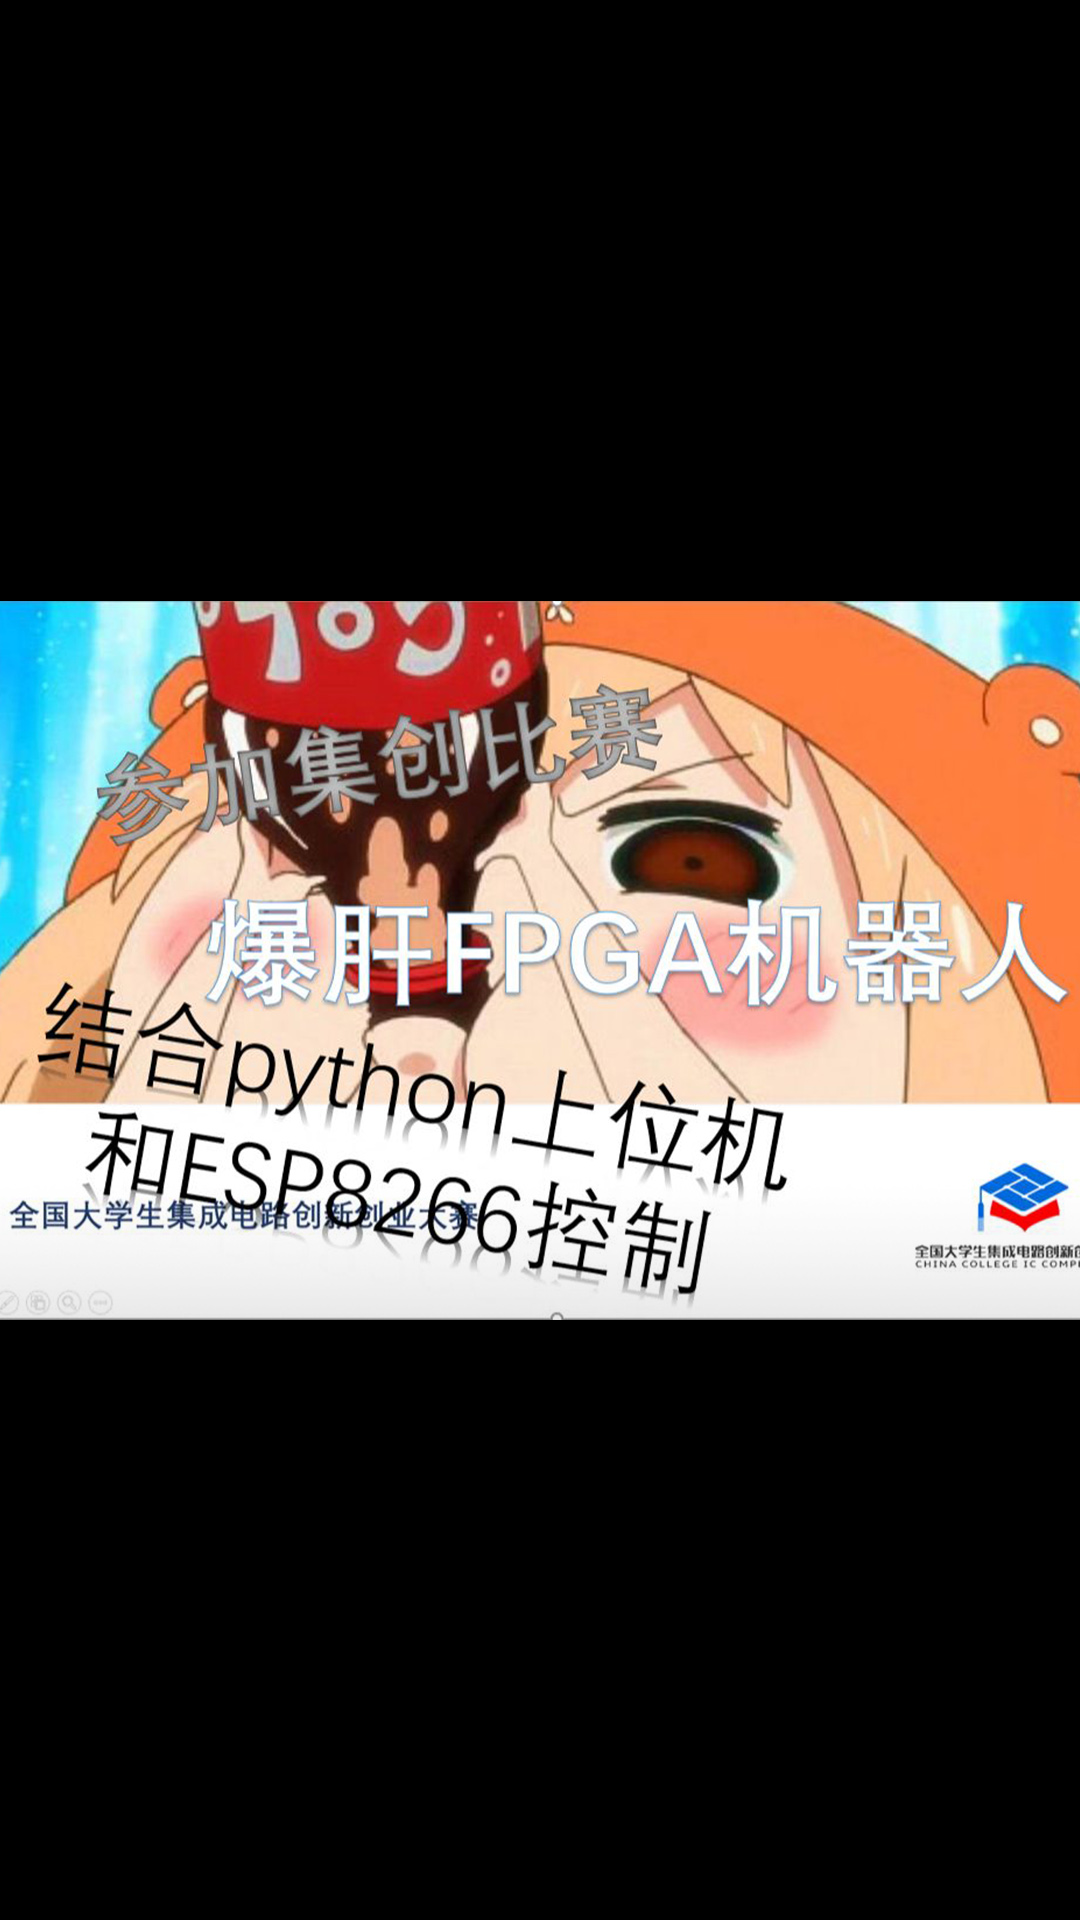 开源源码  使用FPGA构建机器人  并结合了ESP8266和python上位机 记录和分享经验